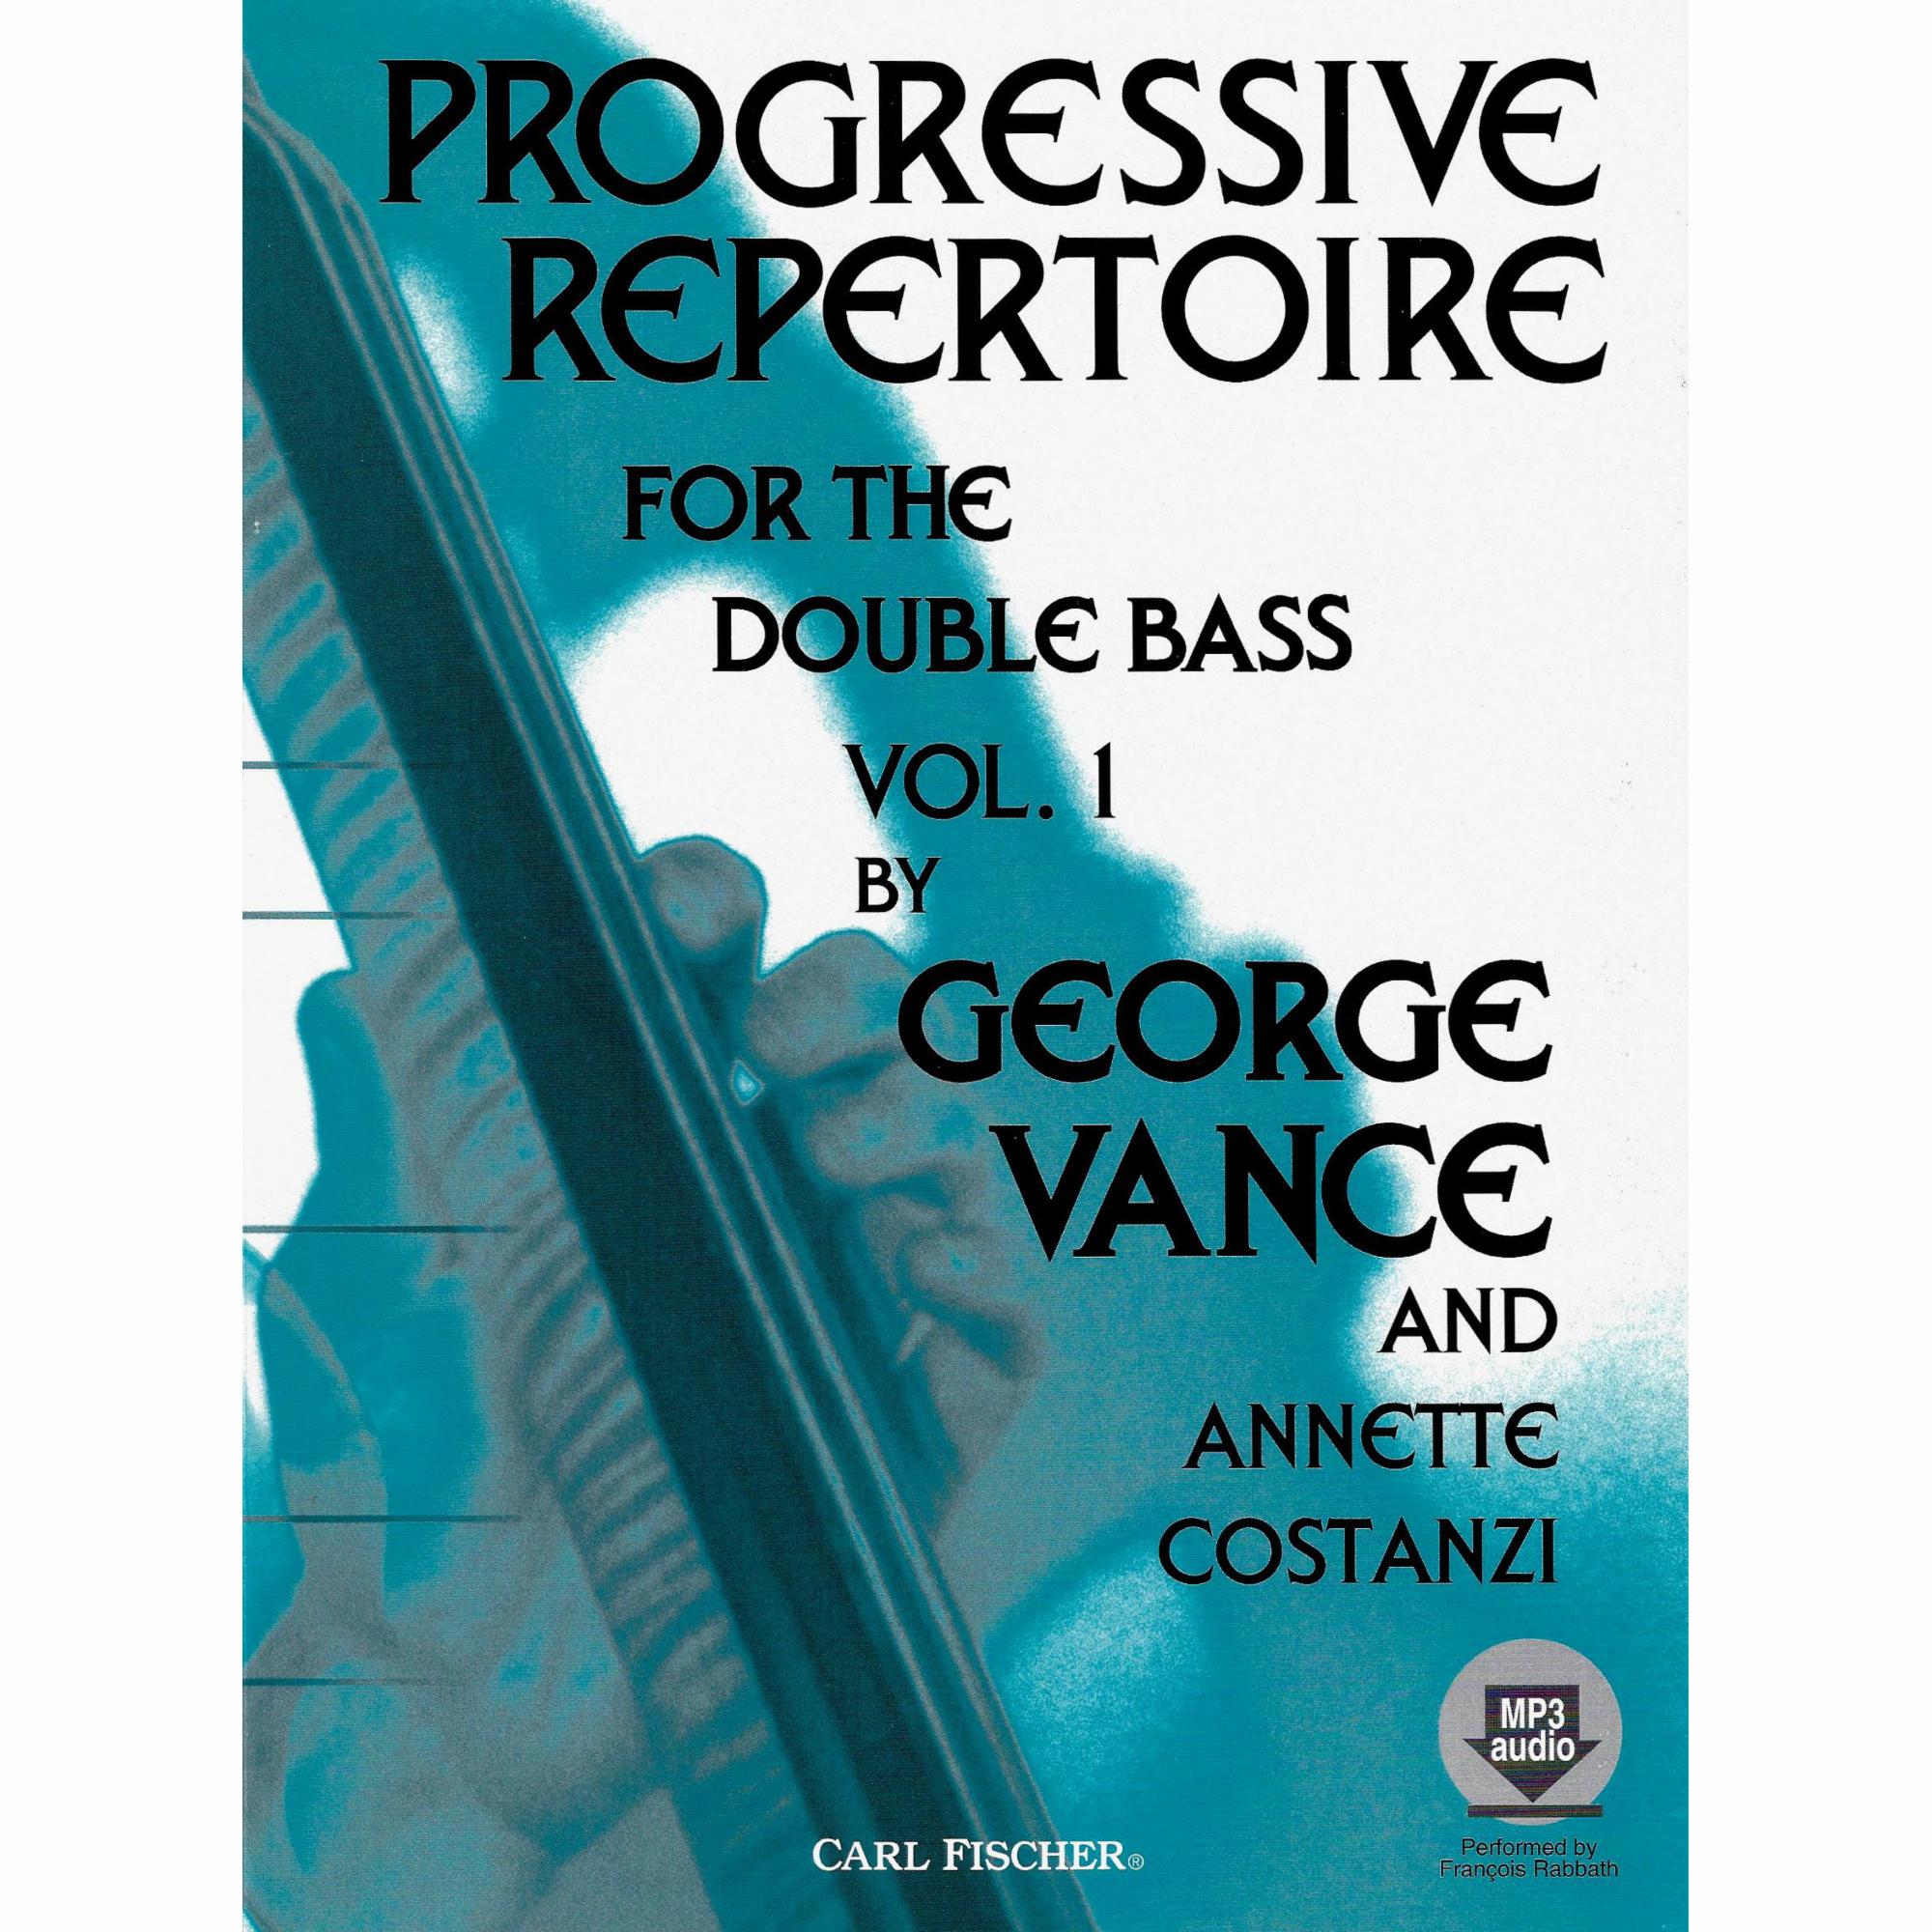 Progressive Repertoire for the Double Bass, Vols. 1-3